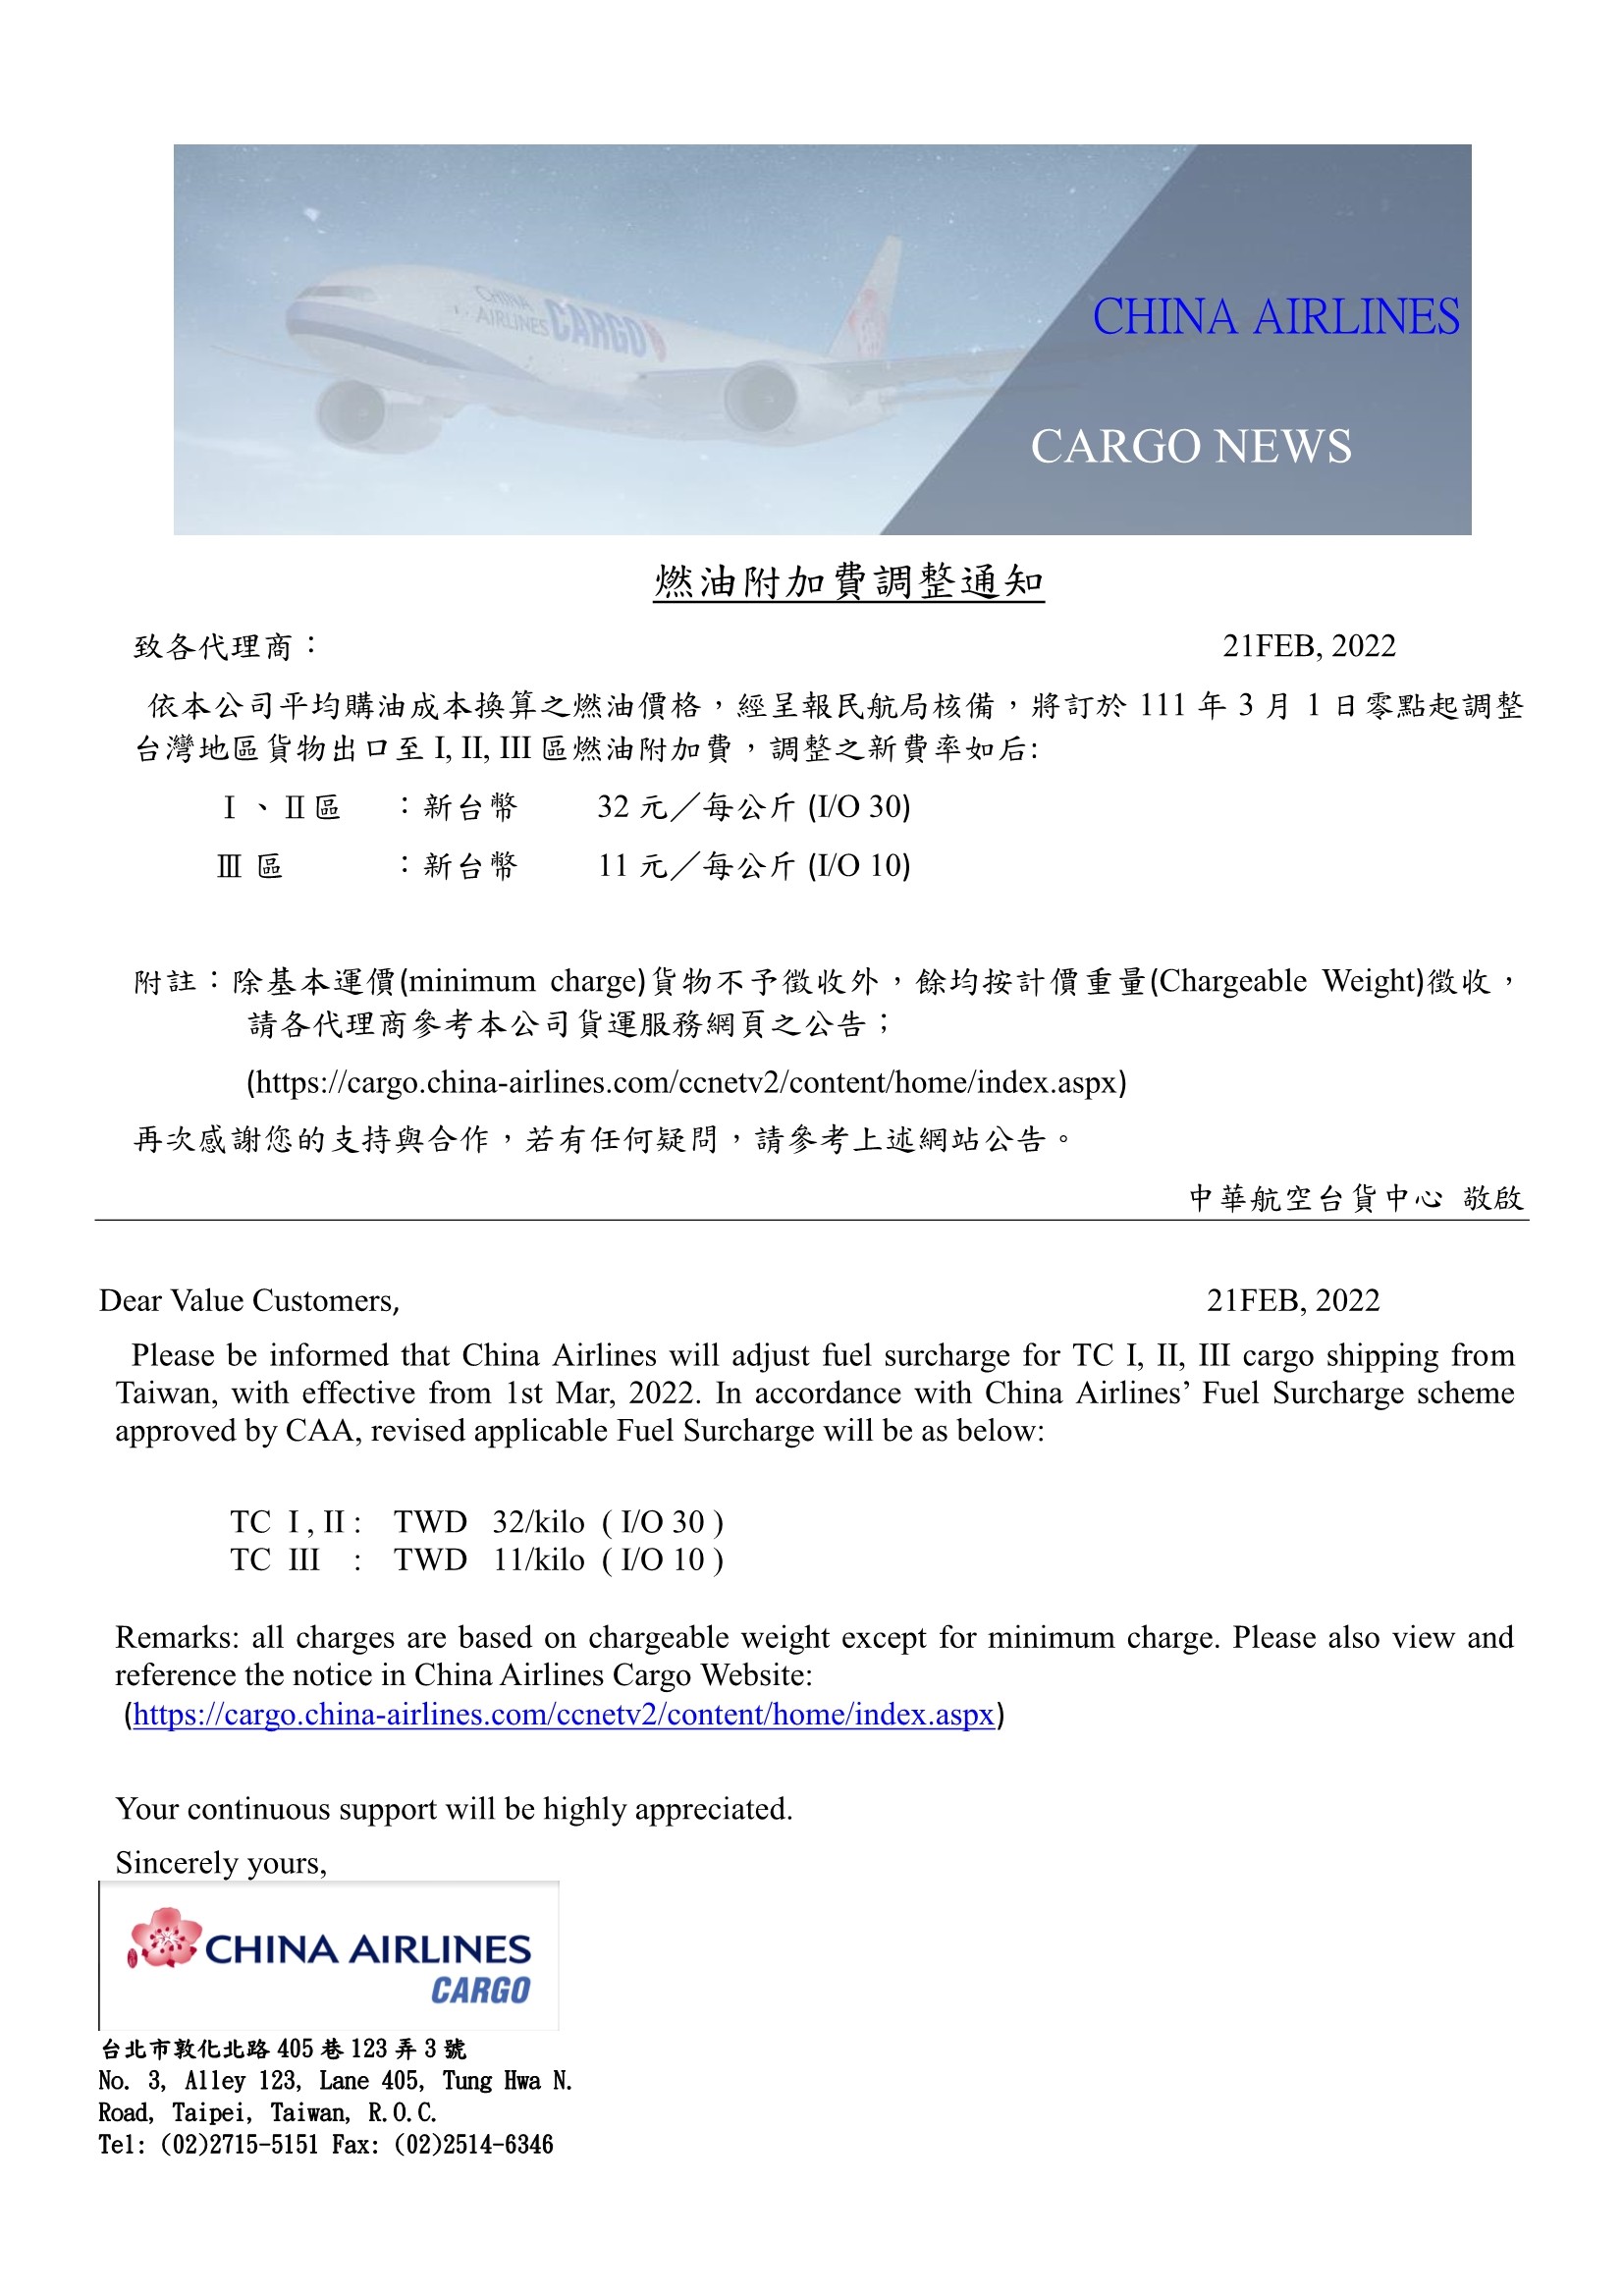 中華航空2022年3月份台灣區貨運燃油附加費調整公告.jpg